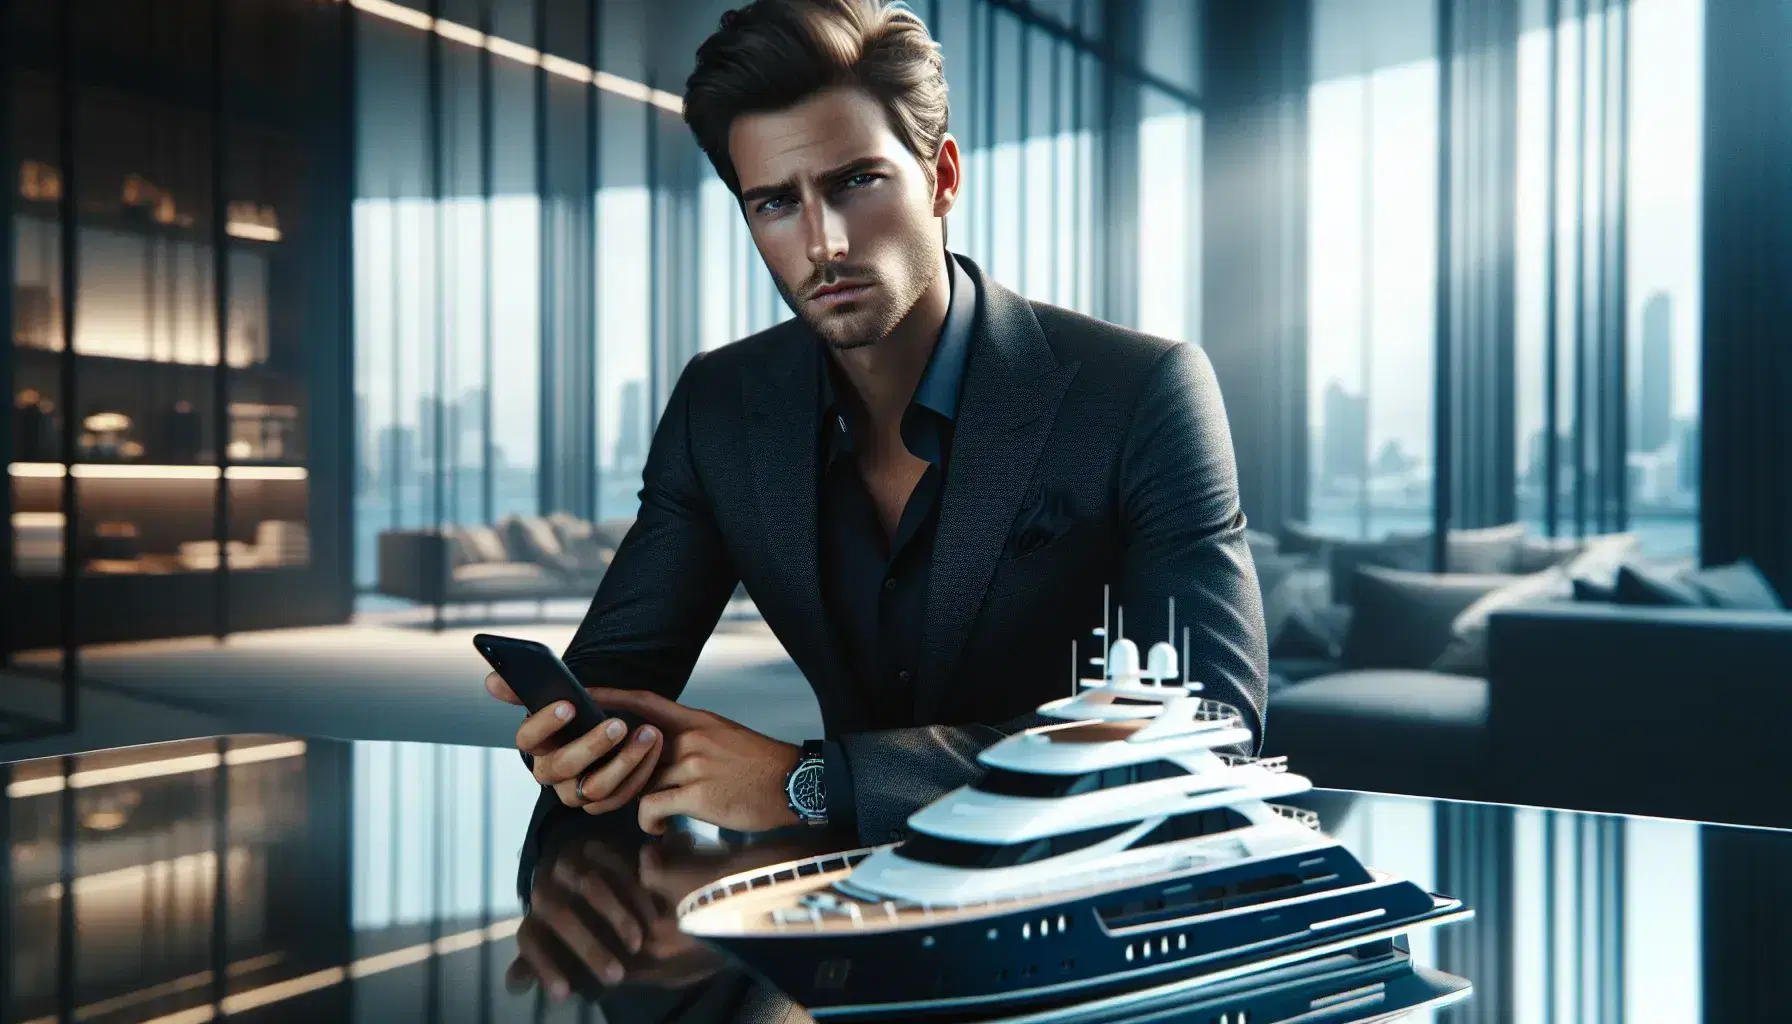 Hombre elegante con traje oscuro y teléfono móvil en oficina lujosa, junto a maqueta de yate blanco sobre mesa de vidrio.